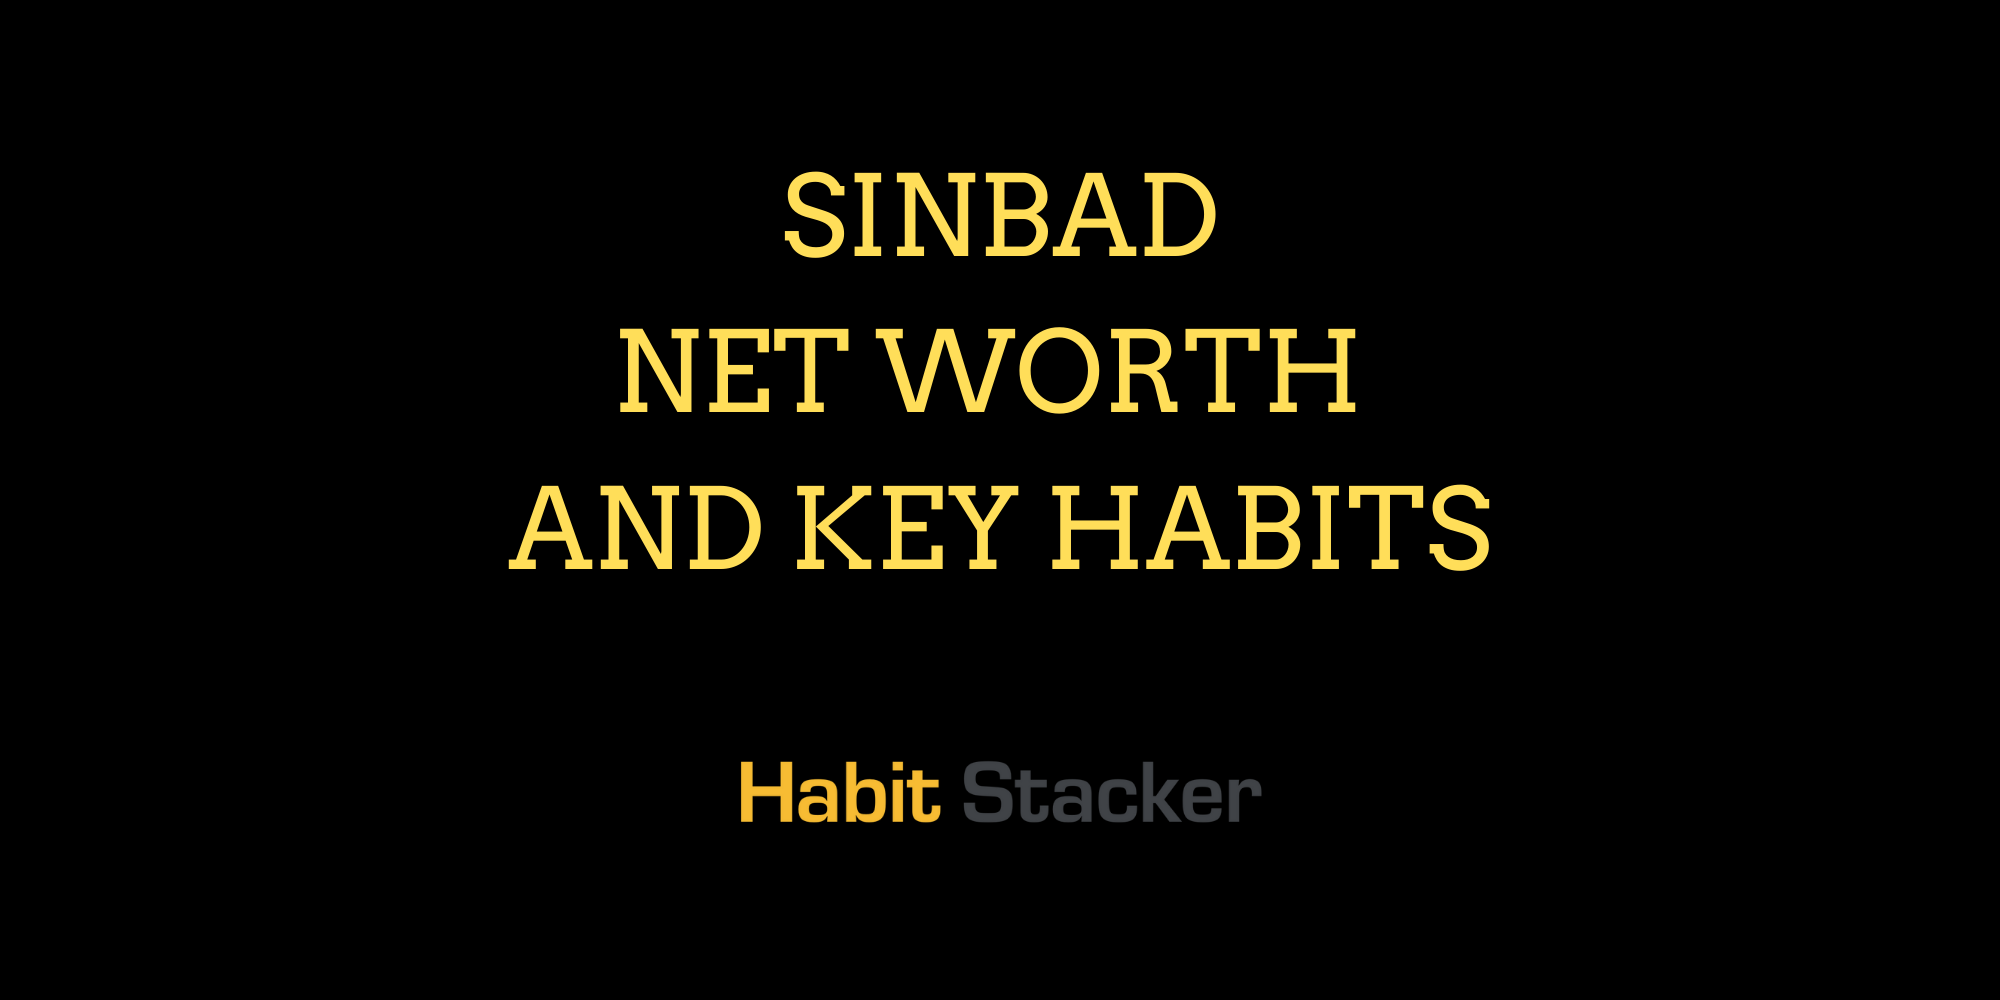 Sinbad Net Worth